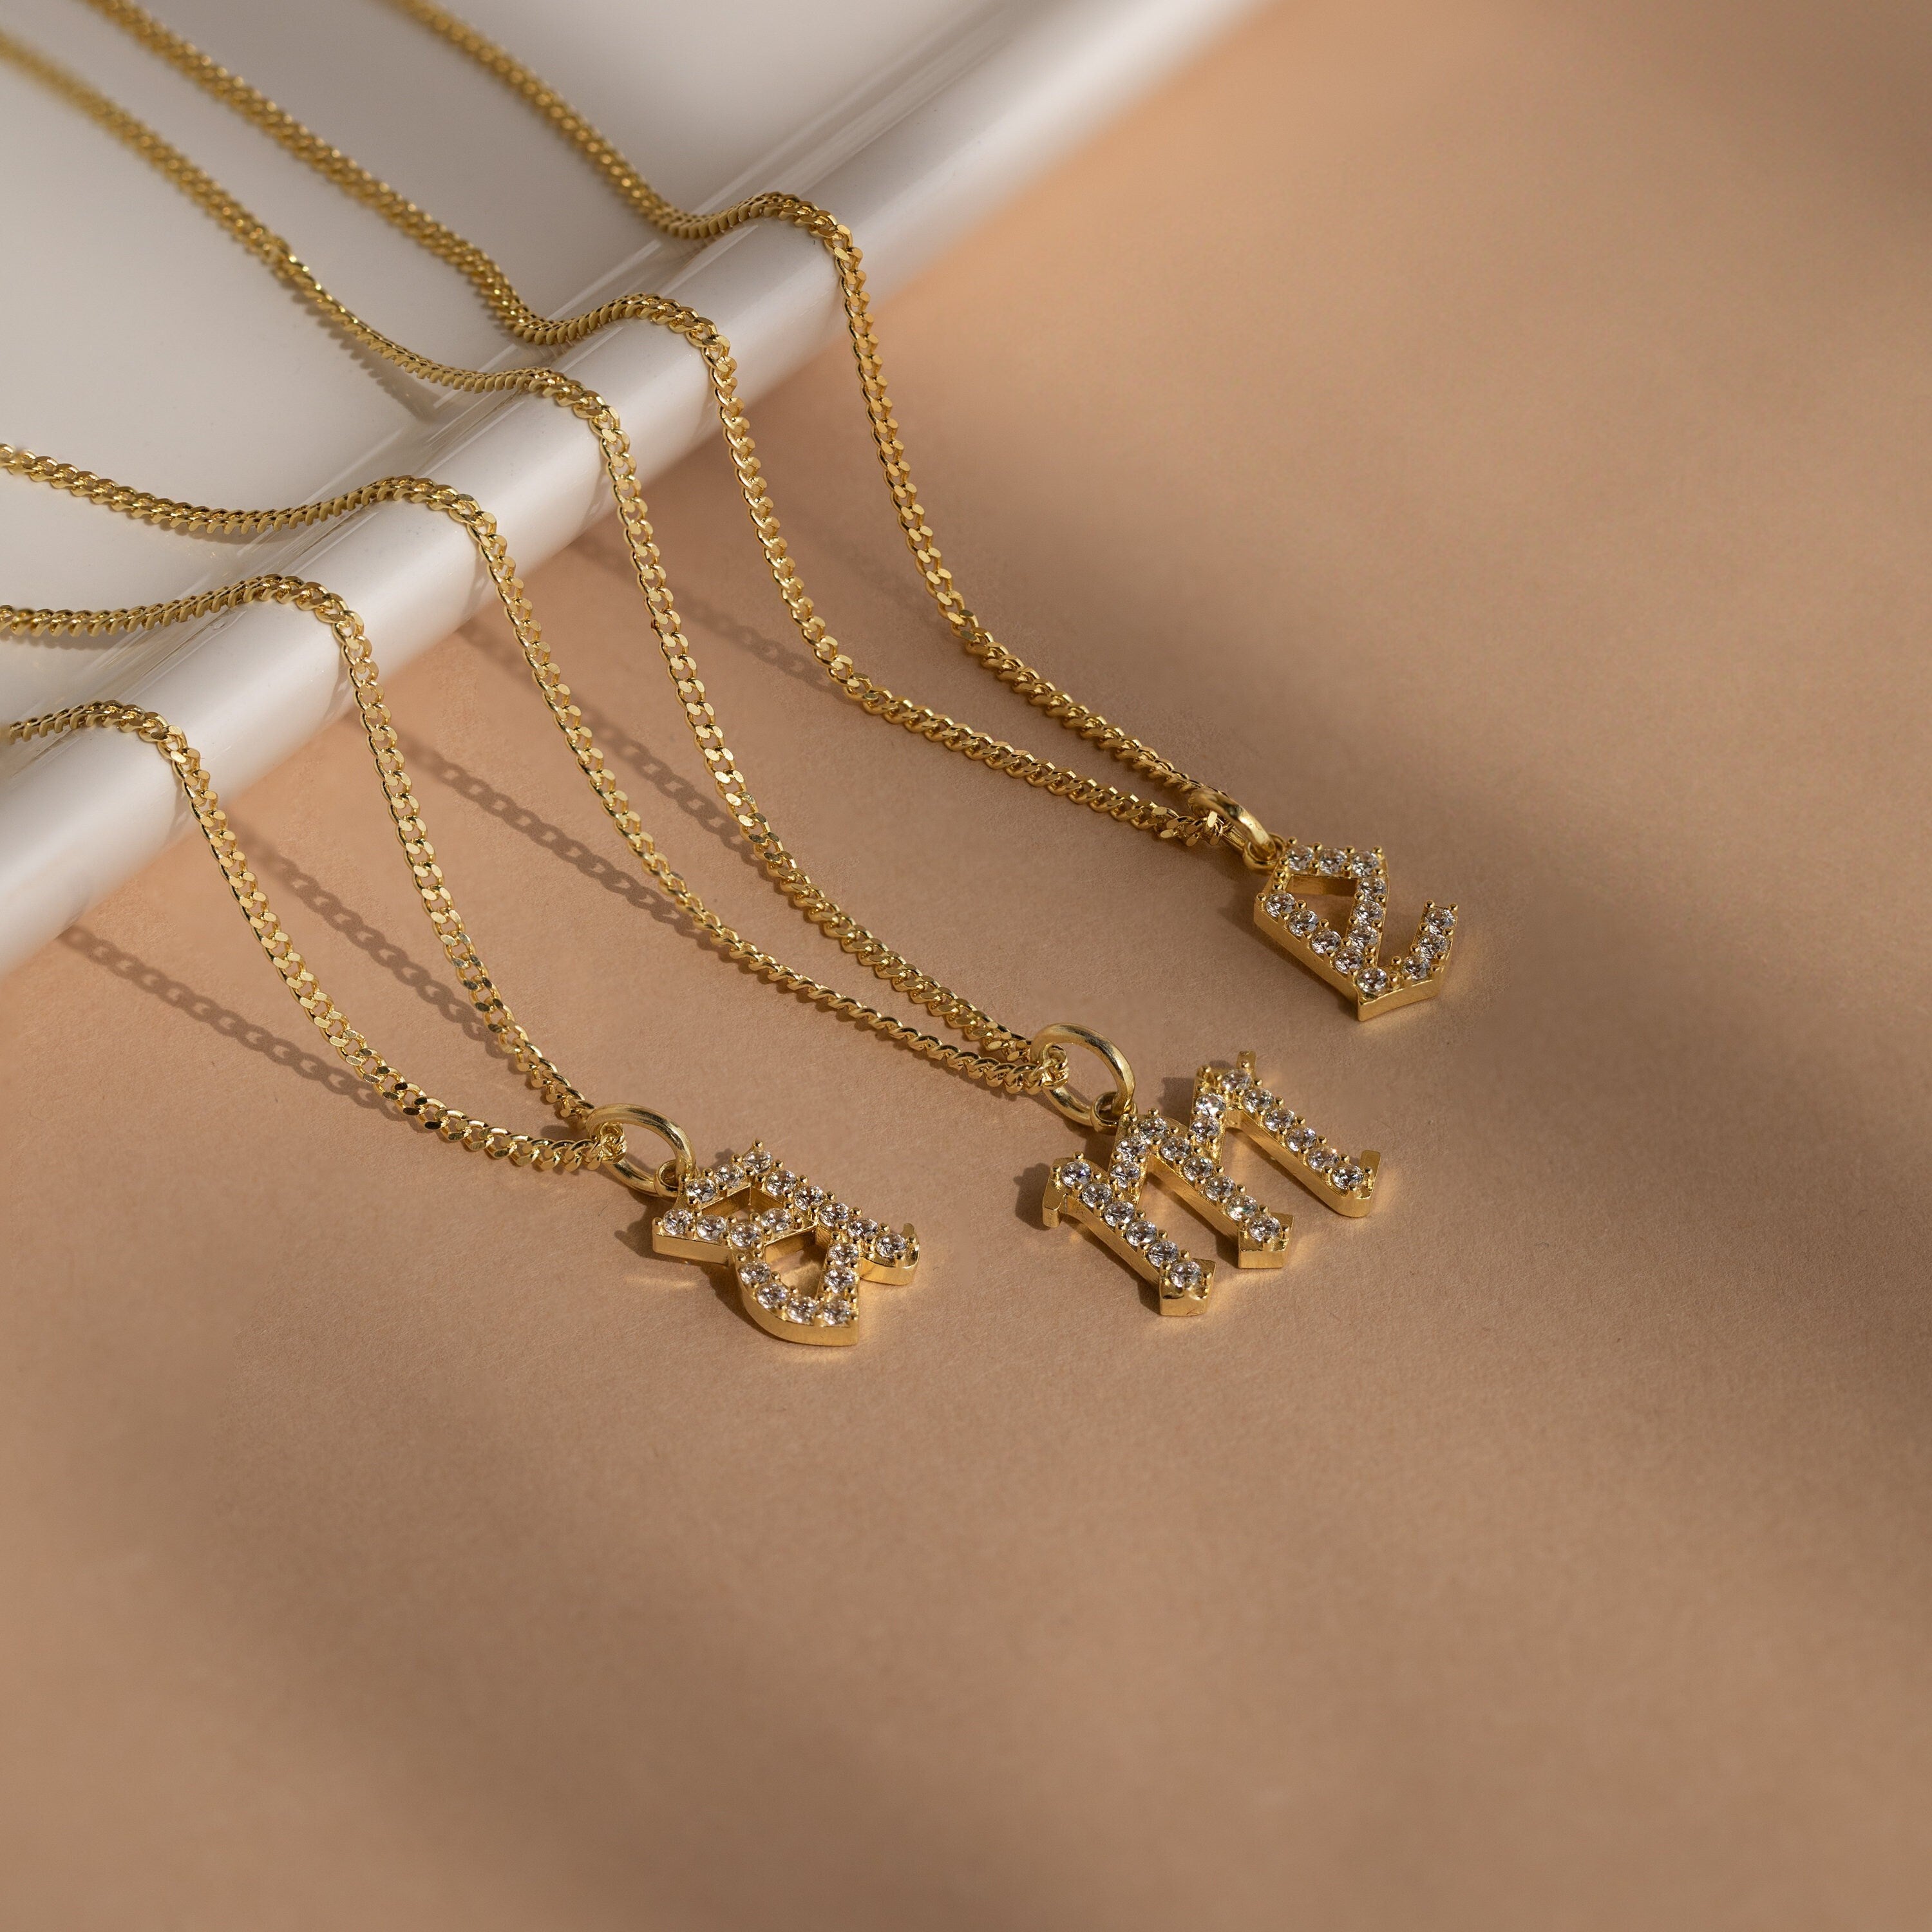 Gothic Initial Necklace – Ari&Lia